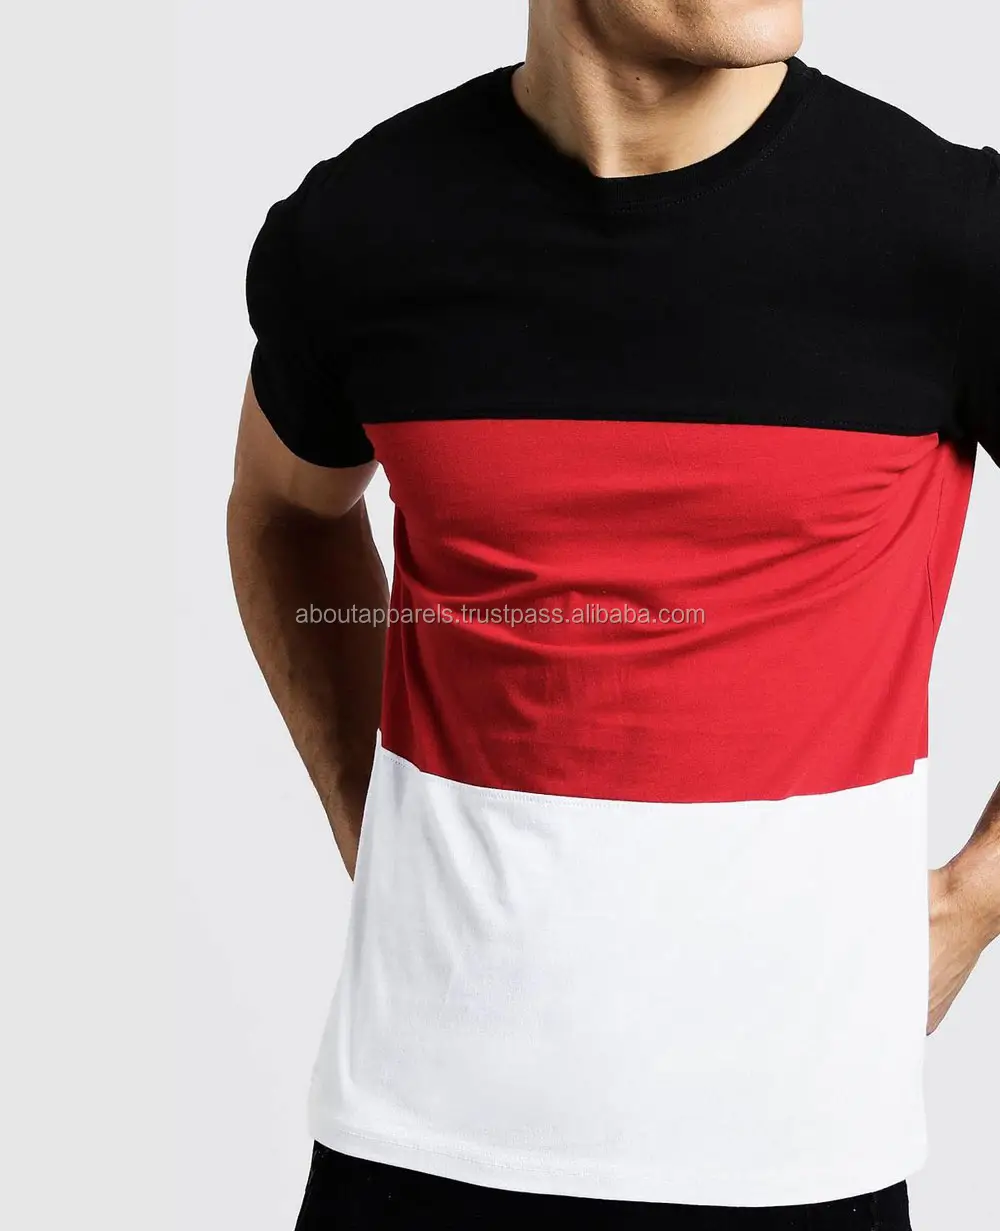 Camiseta slim fit personalizada, novo modelo de camiseta casual masculina em massa